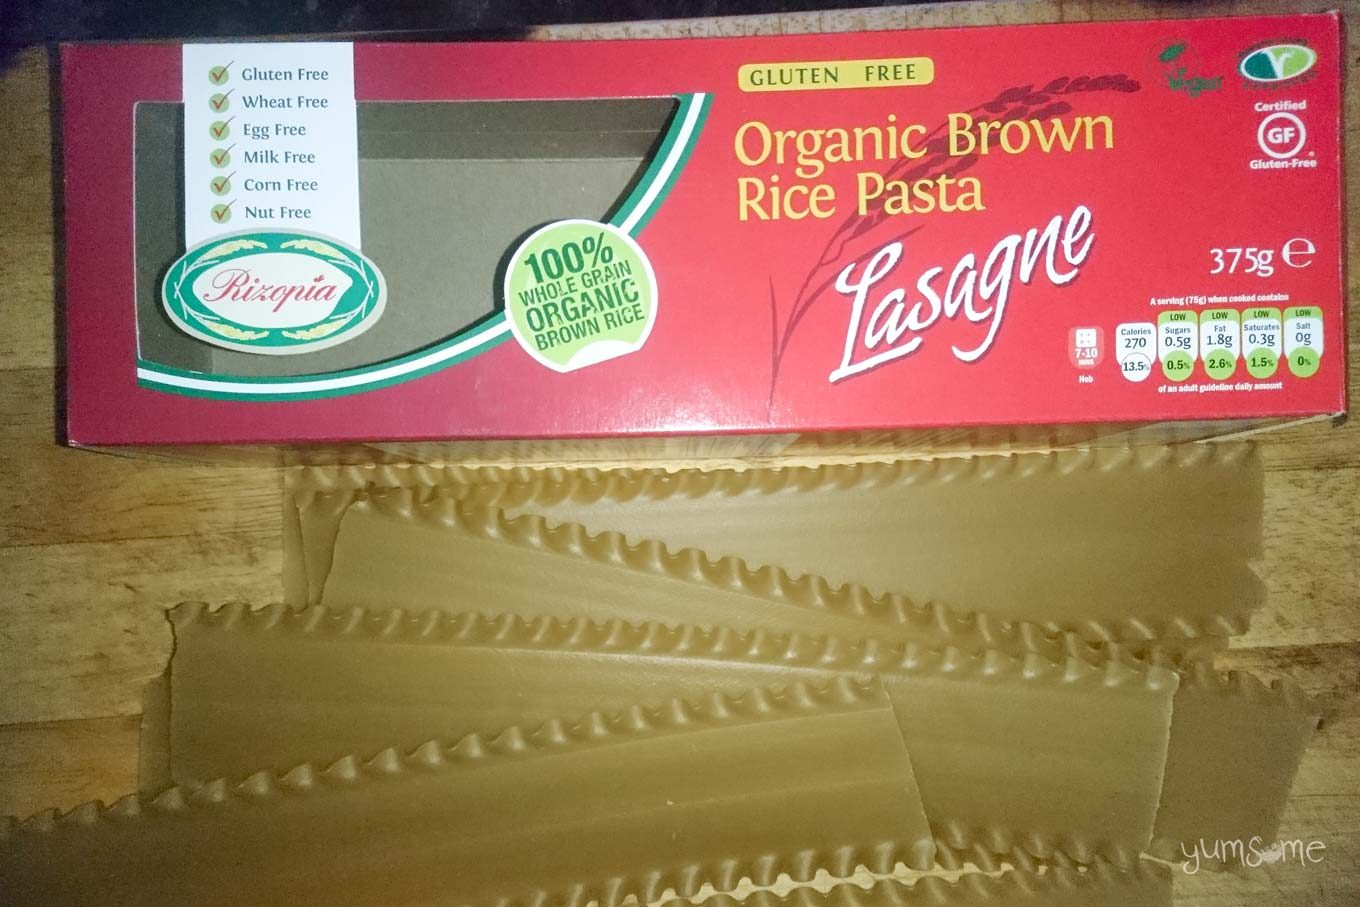 A box and several lasagne sheets.